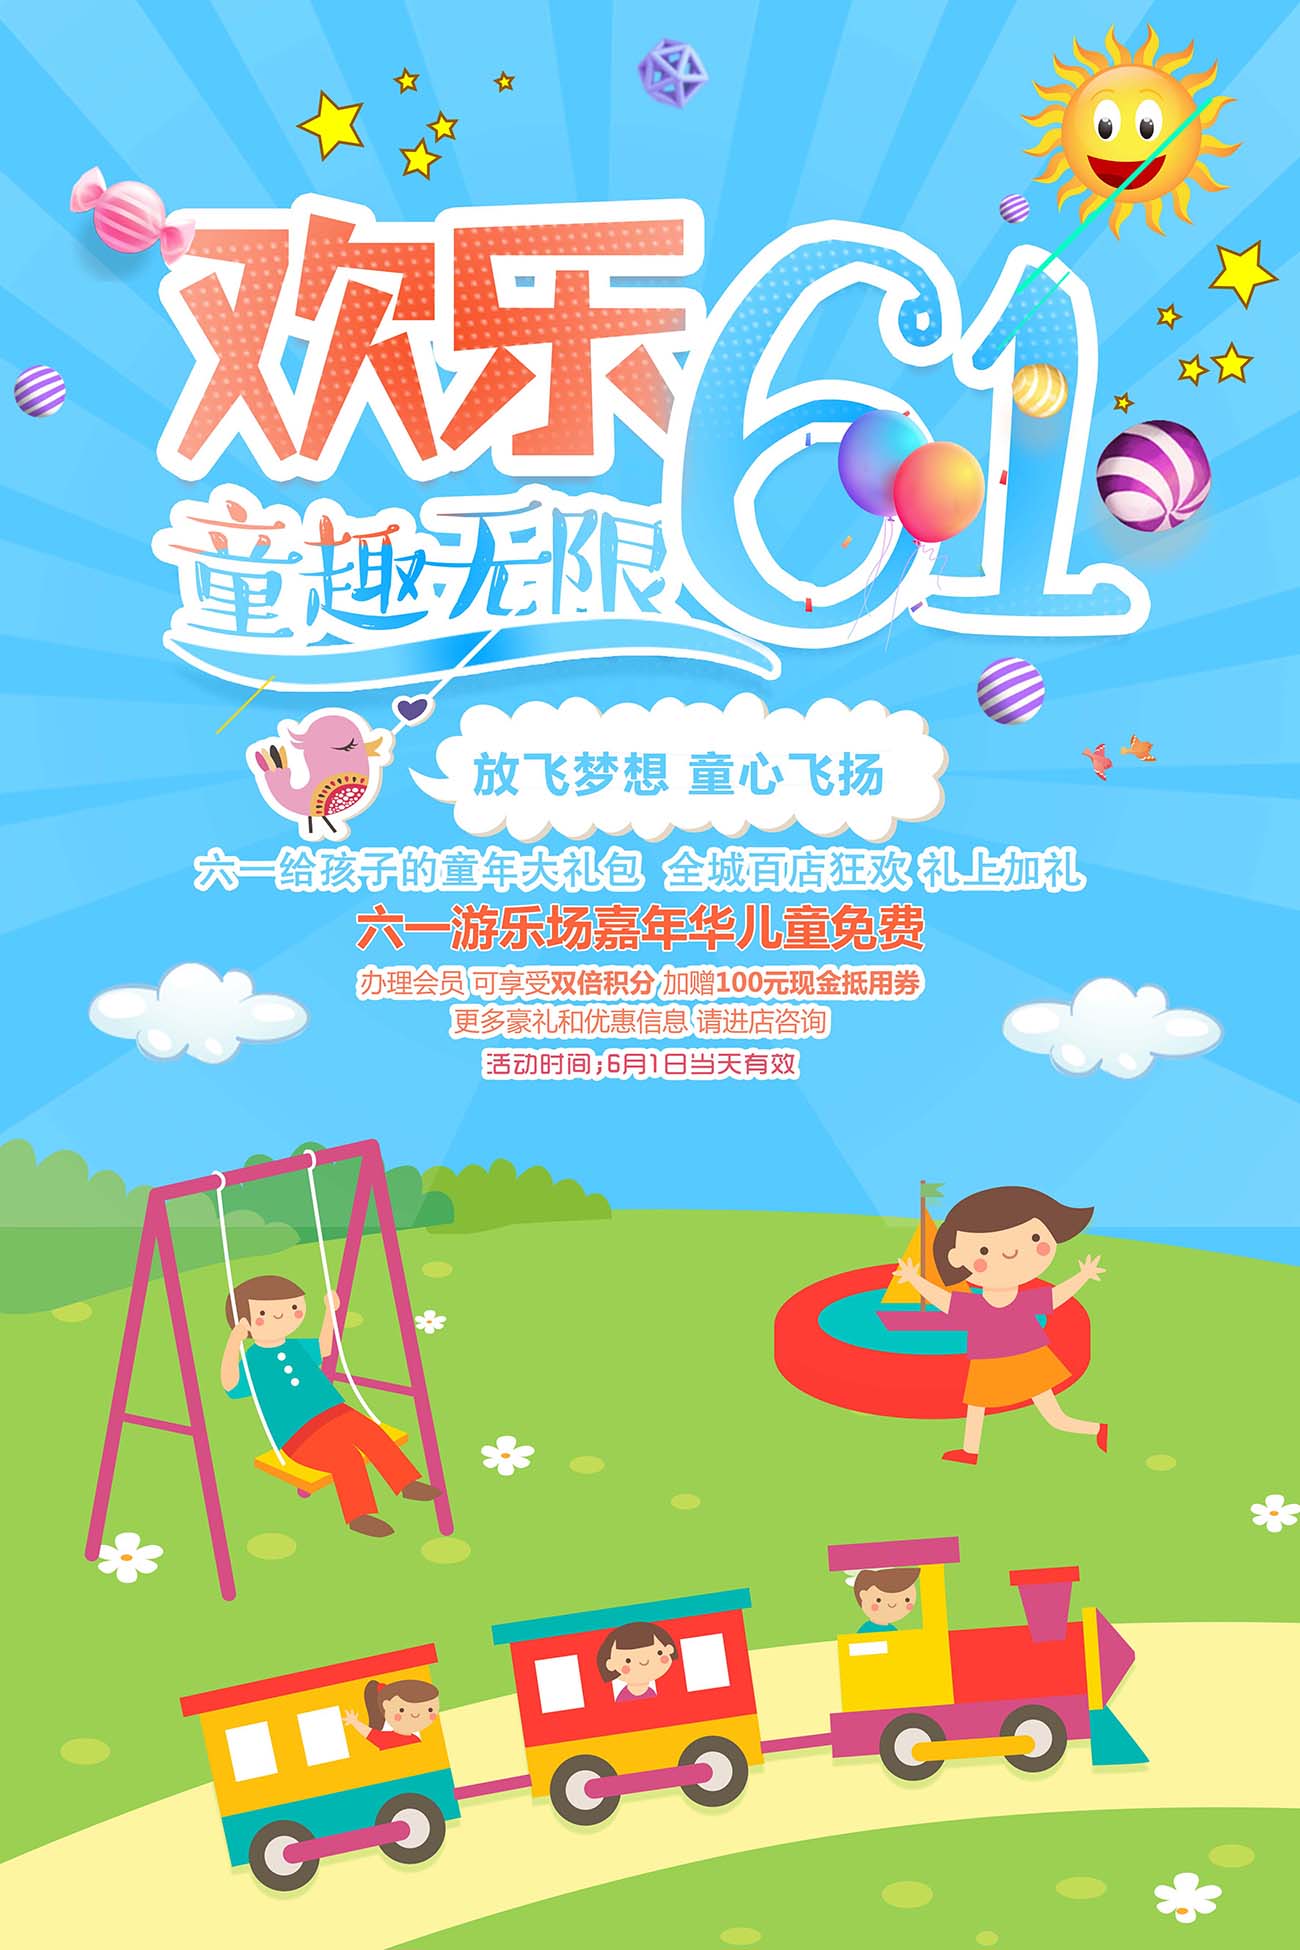 六一61儿童节欢乐童趣无限促销海报设计PSD源文件